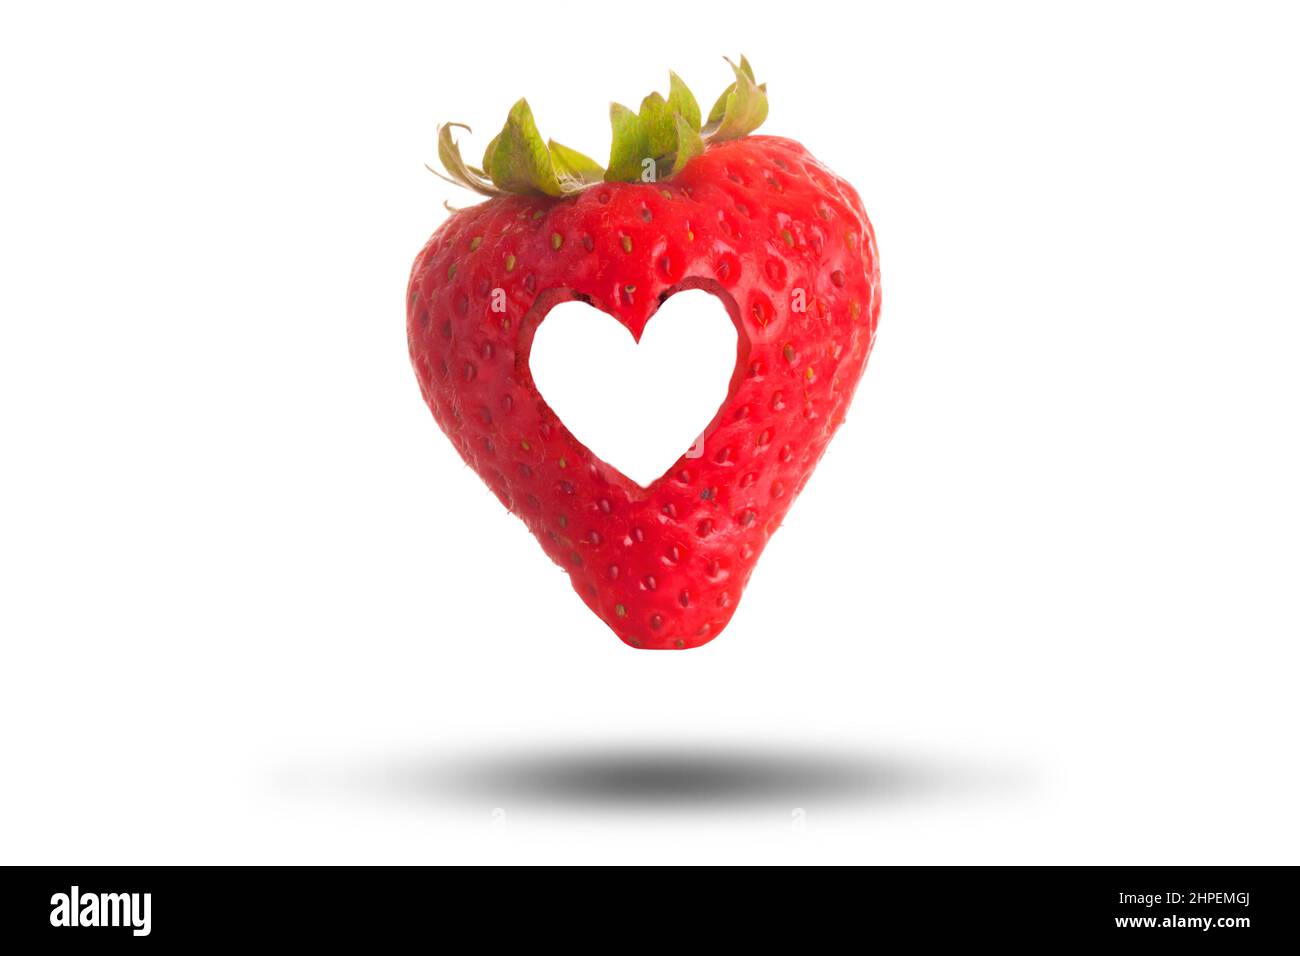 Love Heart Schnitt durch eine rote Erdbeere isoliert auf einem weißen Hintergrund. Ich liebe das Konzept der frischen Früchte Stockfoto